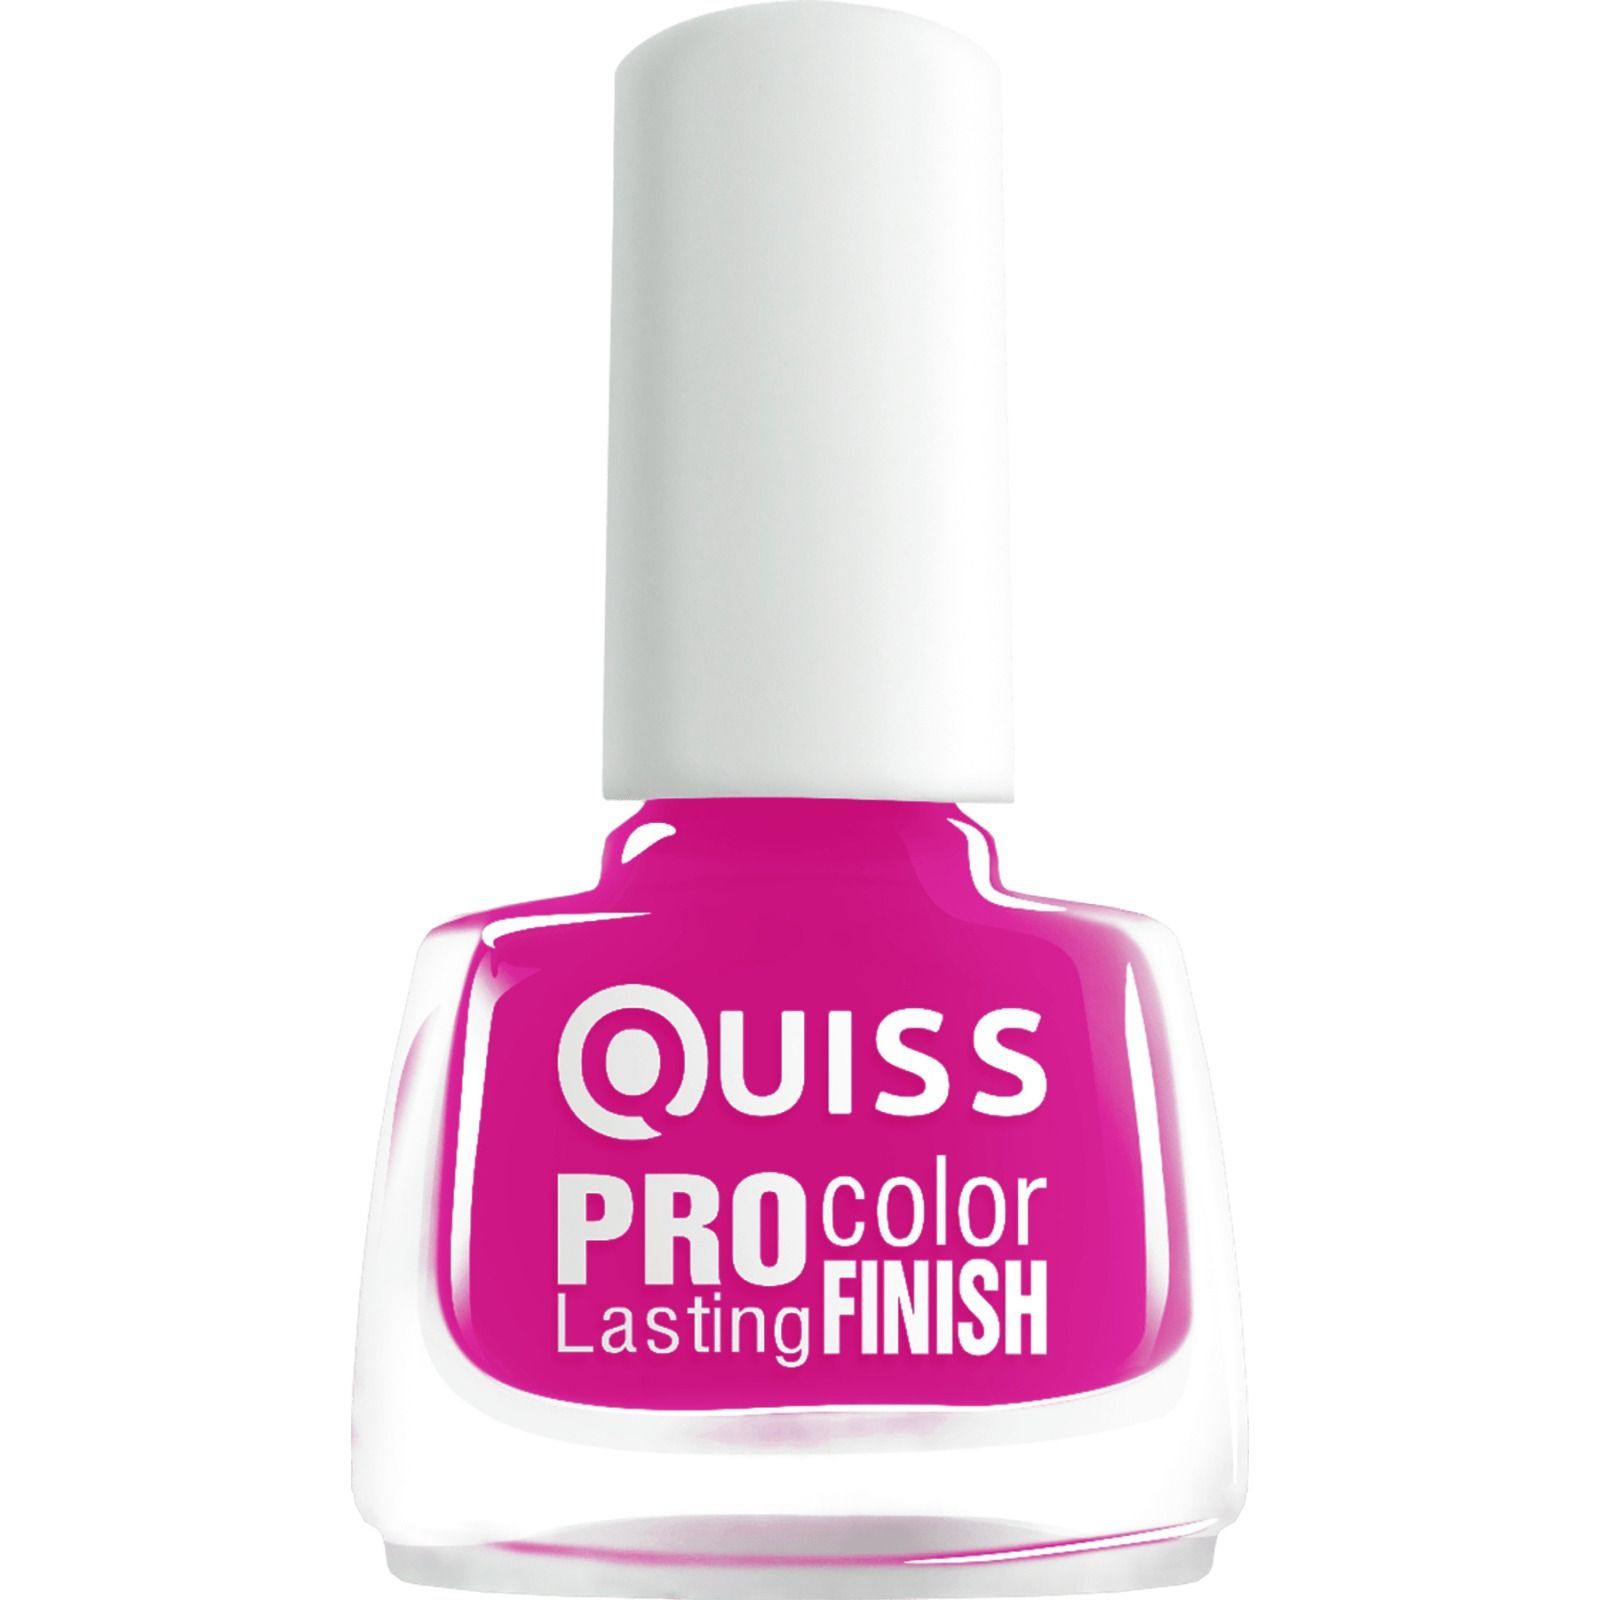 Лак для ногтей Quiss Pro Color Lasting Finish тон 014, 6 мл - фото 1